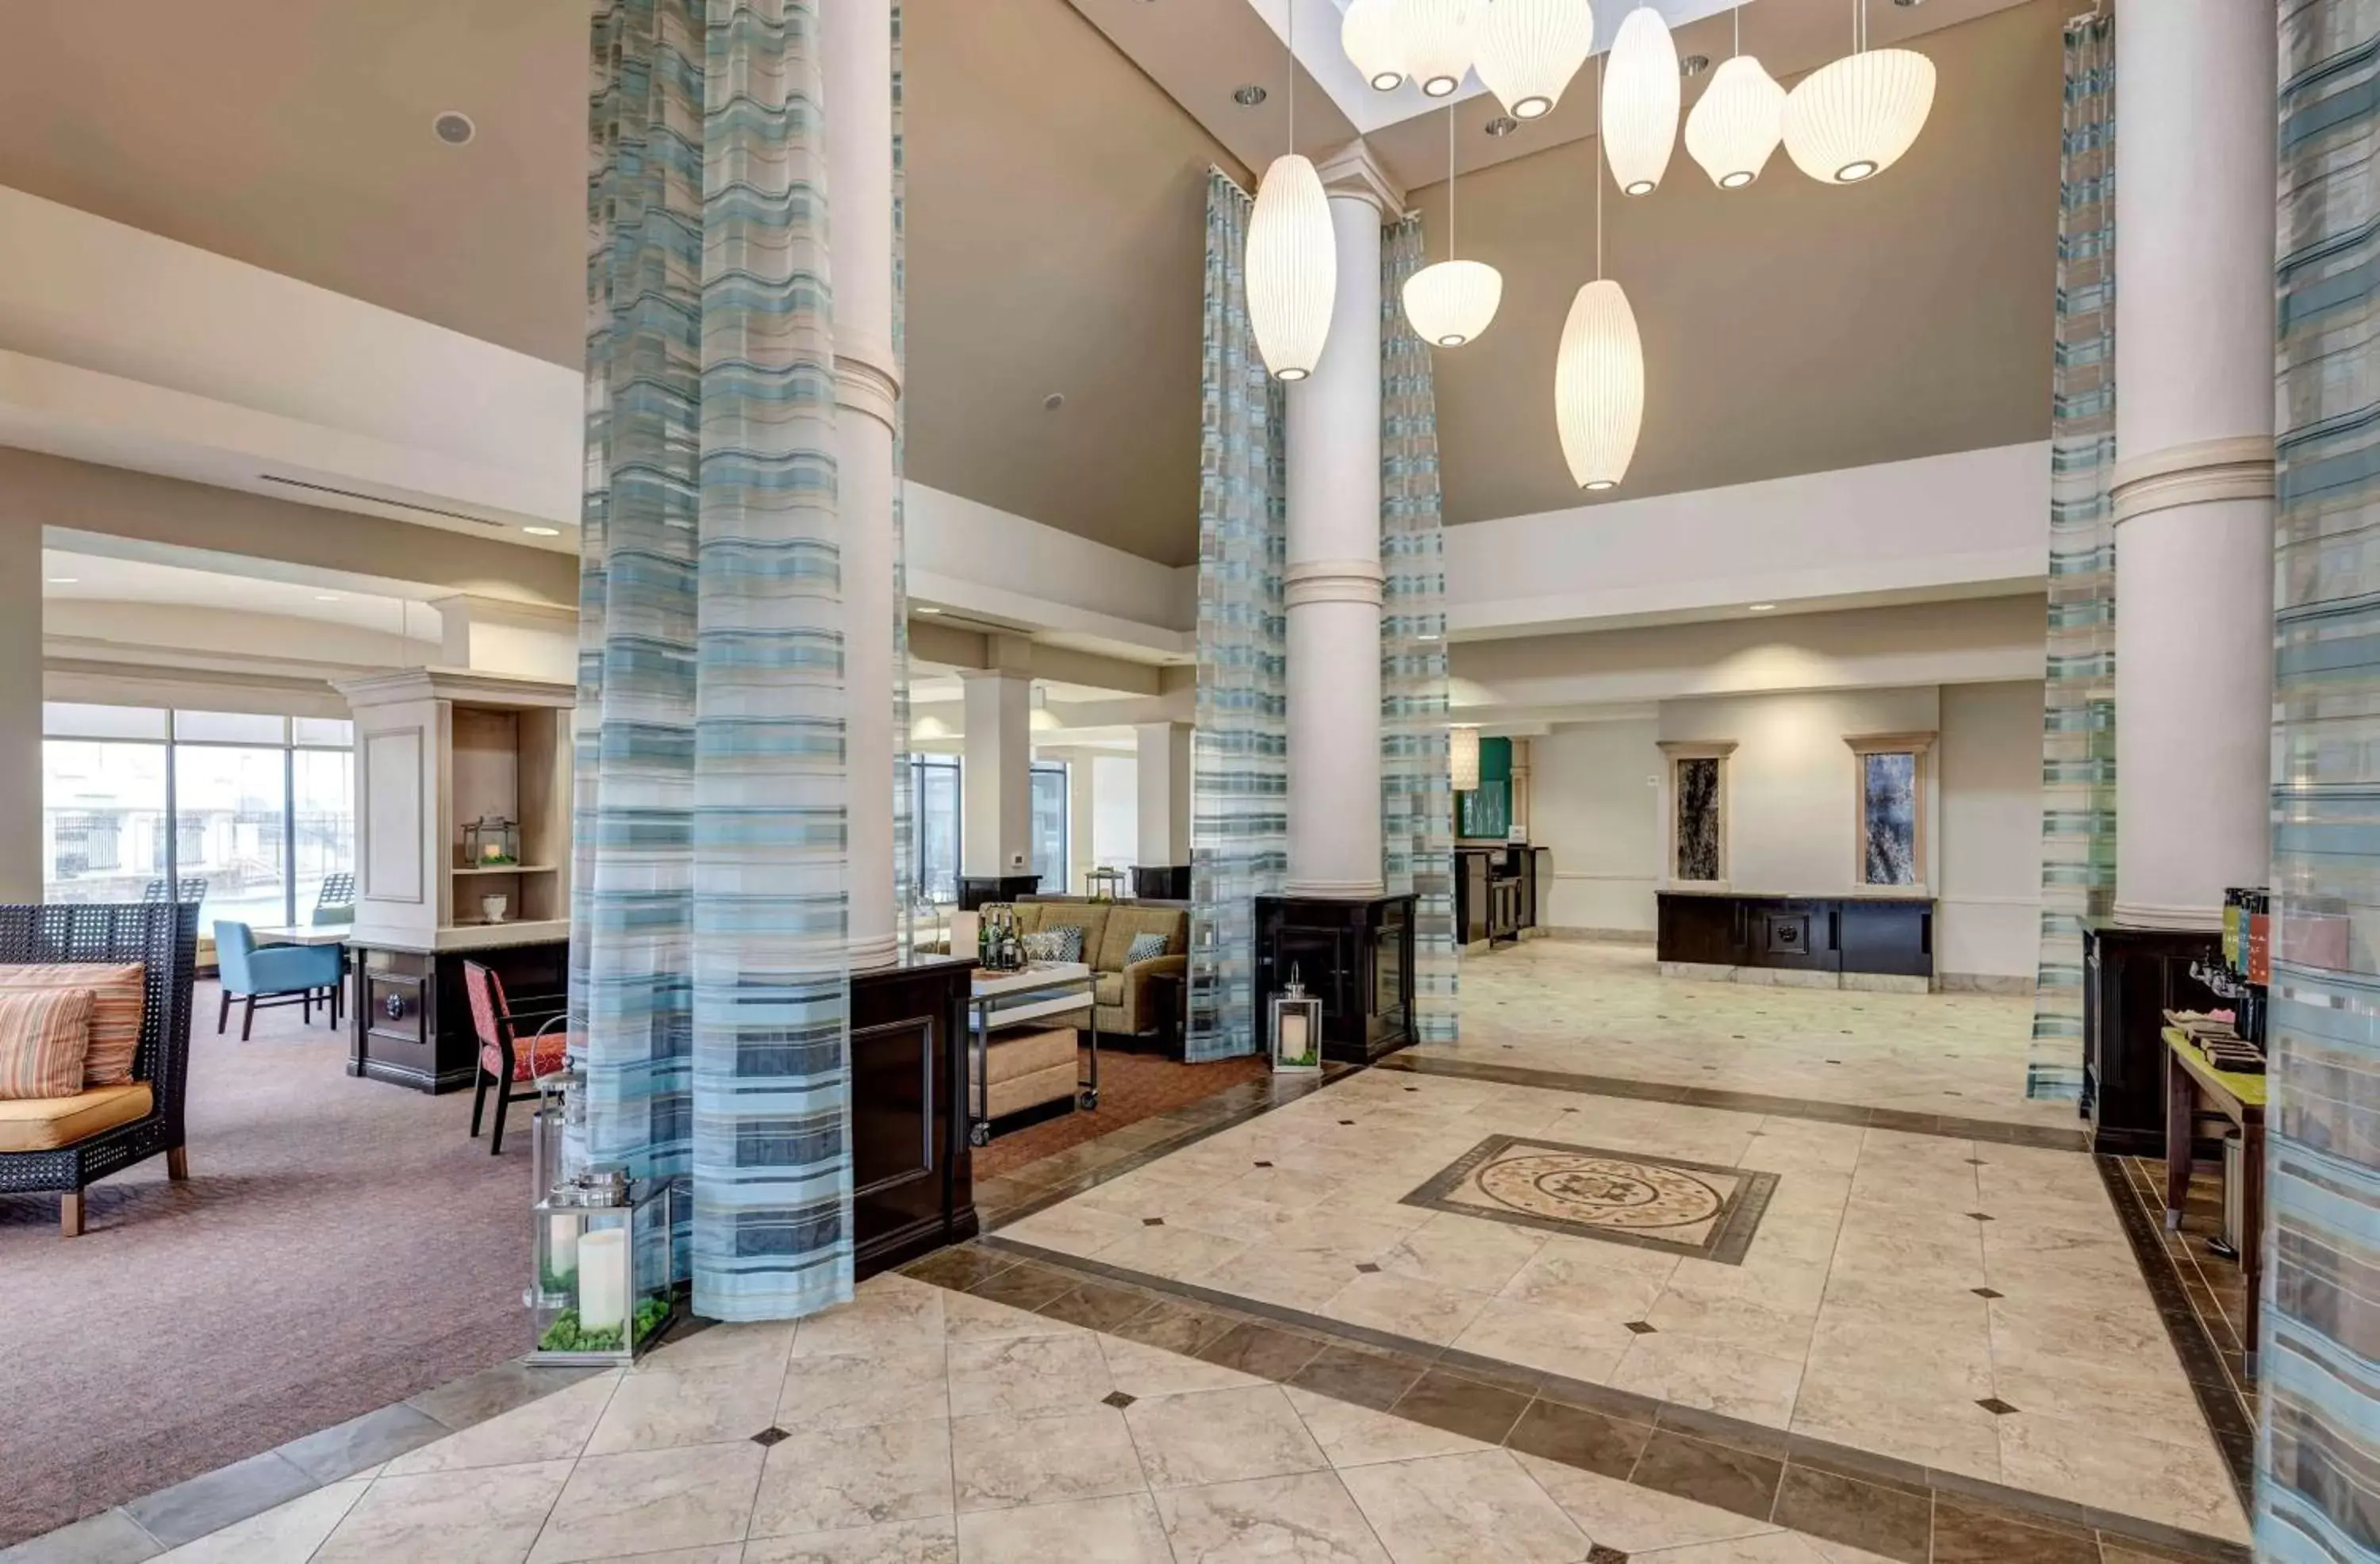 Lobby or reception, Lobby/Reception in Hilton Garden Inn Dallas Lewisville